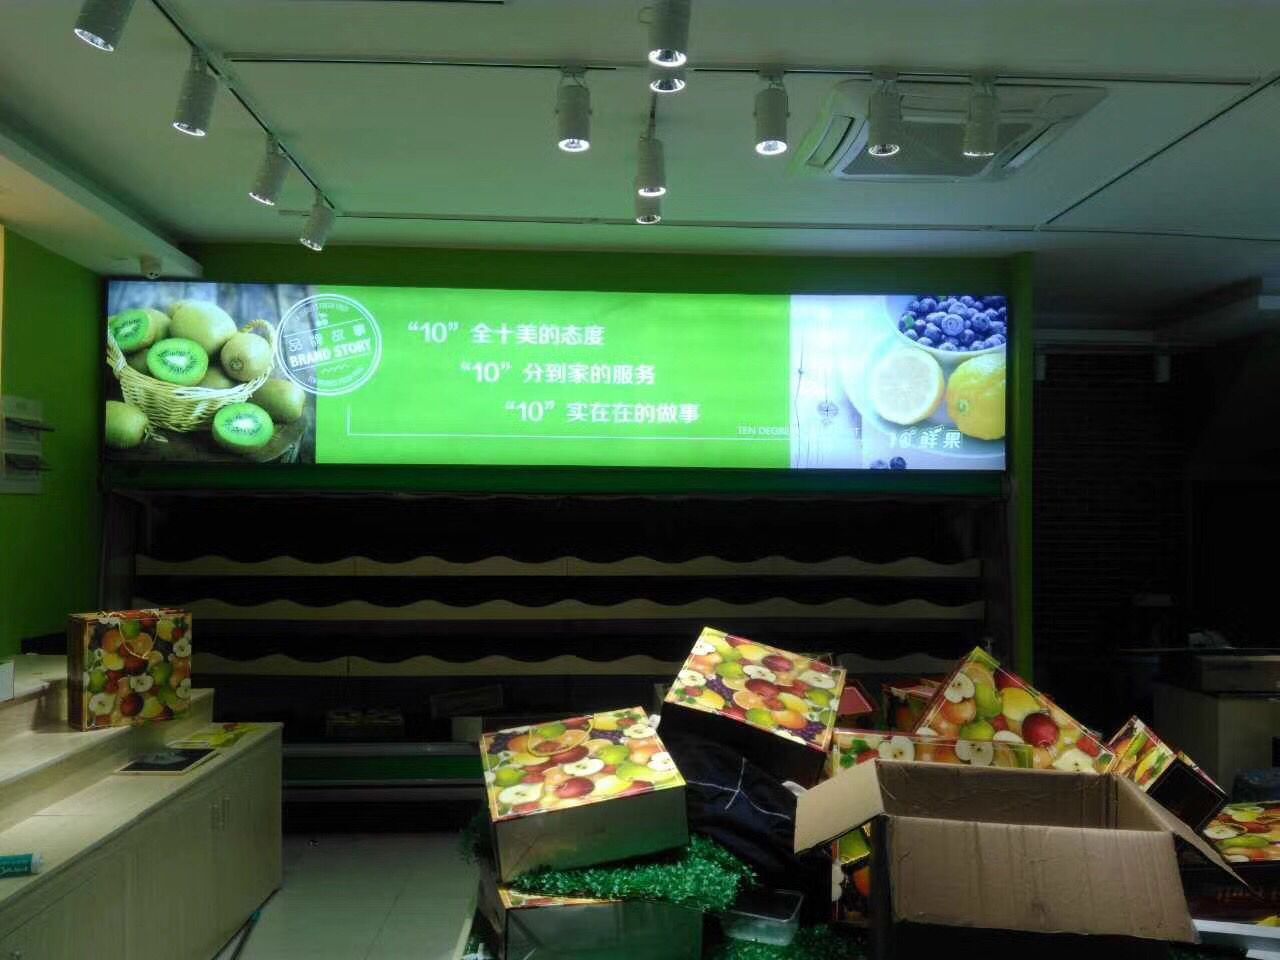 10℃鲜果直销行连锁超市绍兴柯桥店,门头及室内灯箱安装